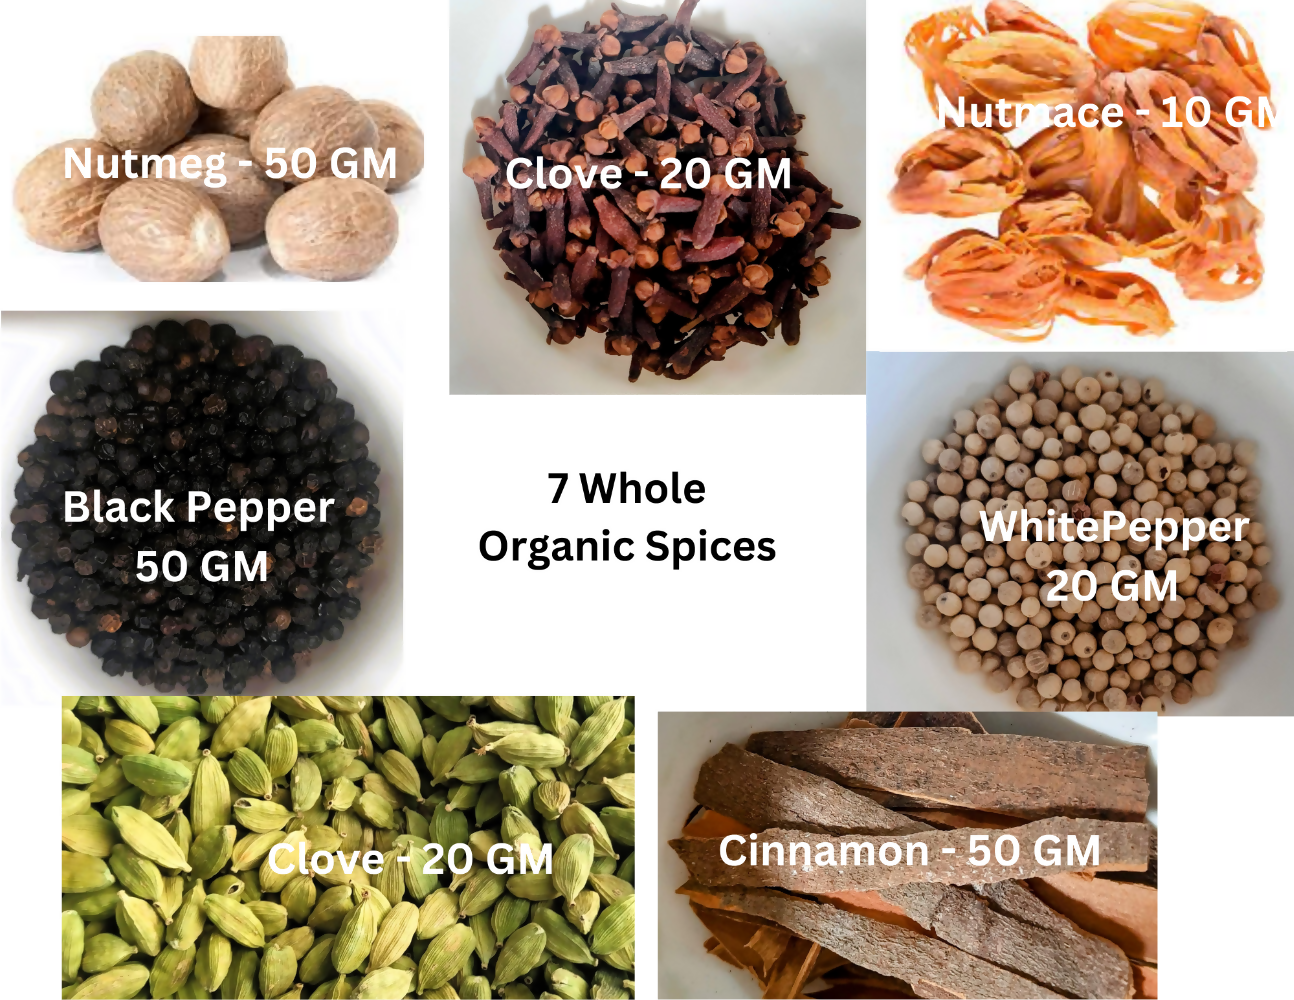 Namma Byadgi's Organic Spice Kit